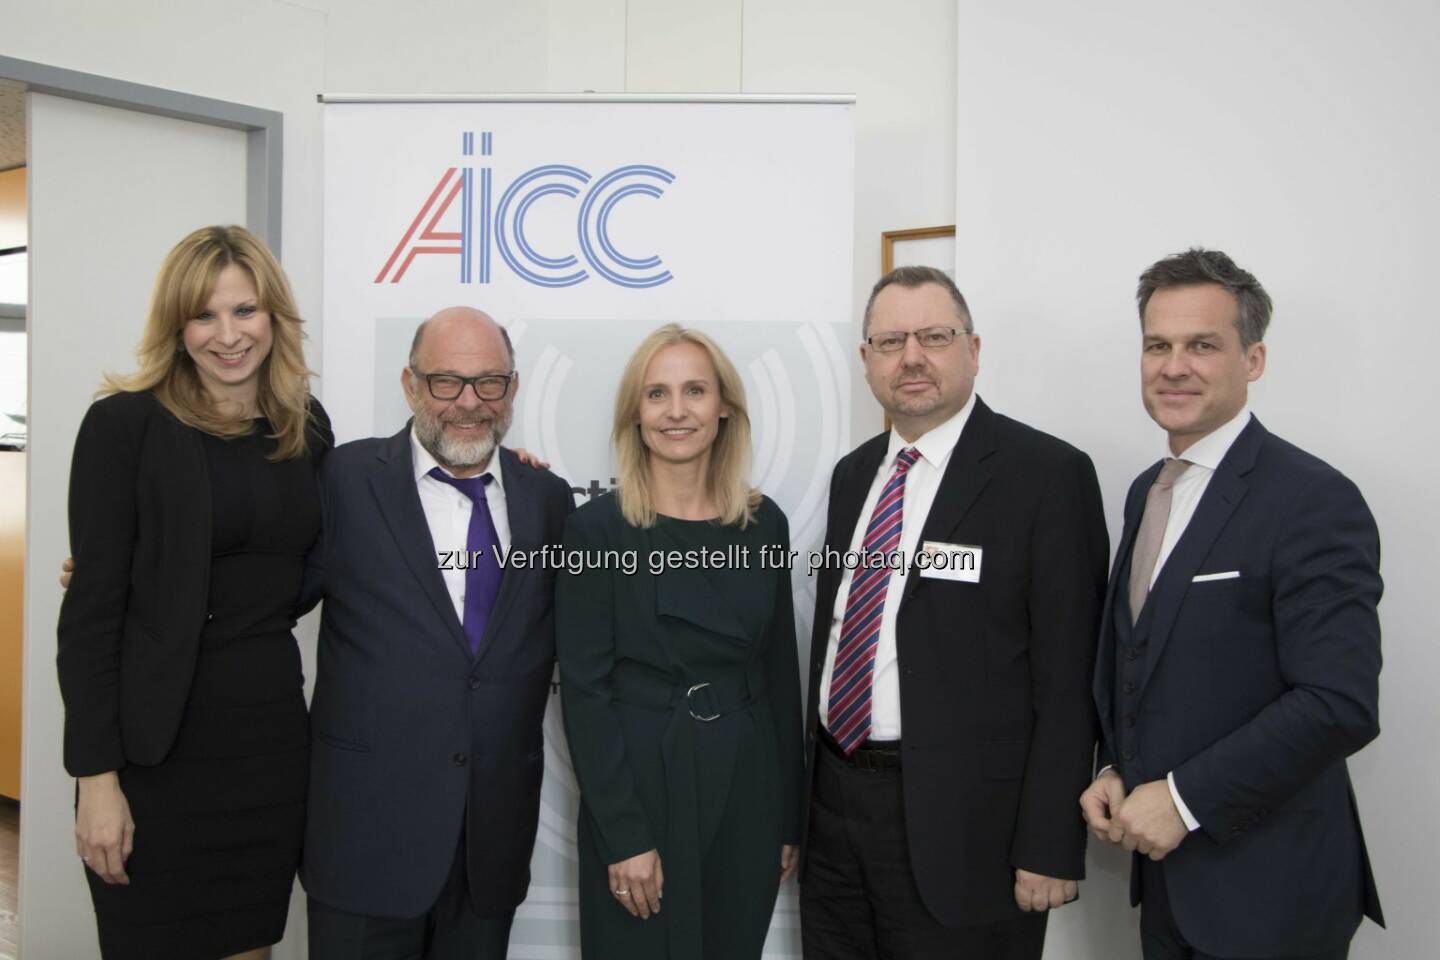 Die Gastgeber der AICC mit Professor Shlomo Shpiro - Lansky, Ganzger & Partner Rechtsanwälte GmbH: AICC holt Anti-Terrorexperten nach Wien (Fotograf: Raphael Schwarz / Fotocredit: LGP)